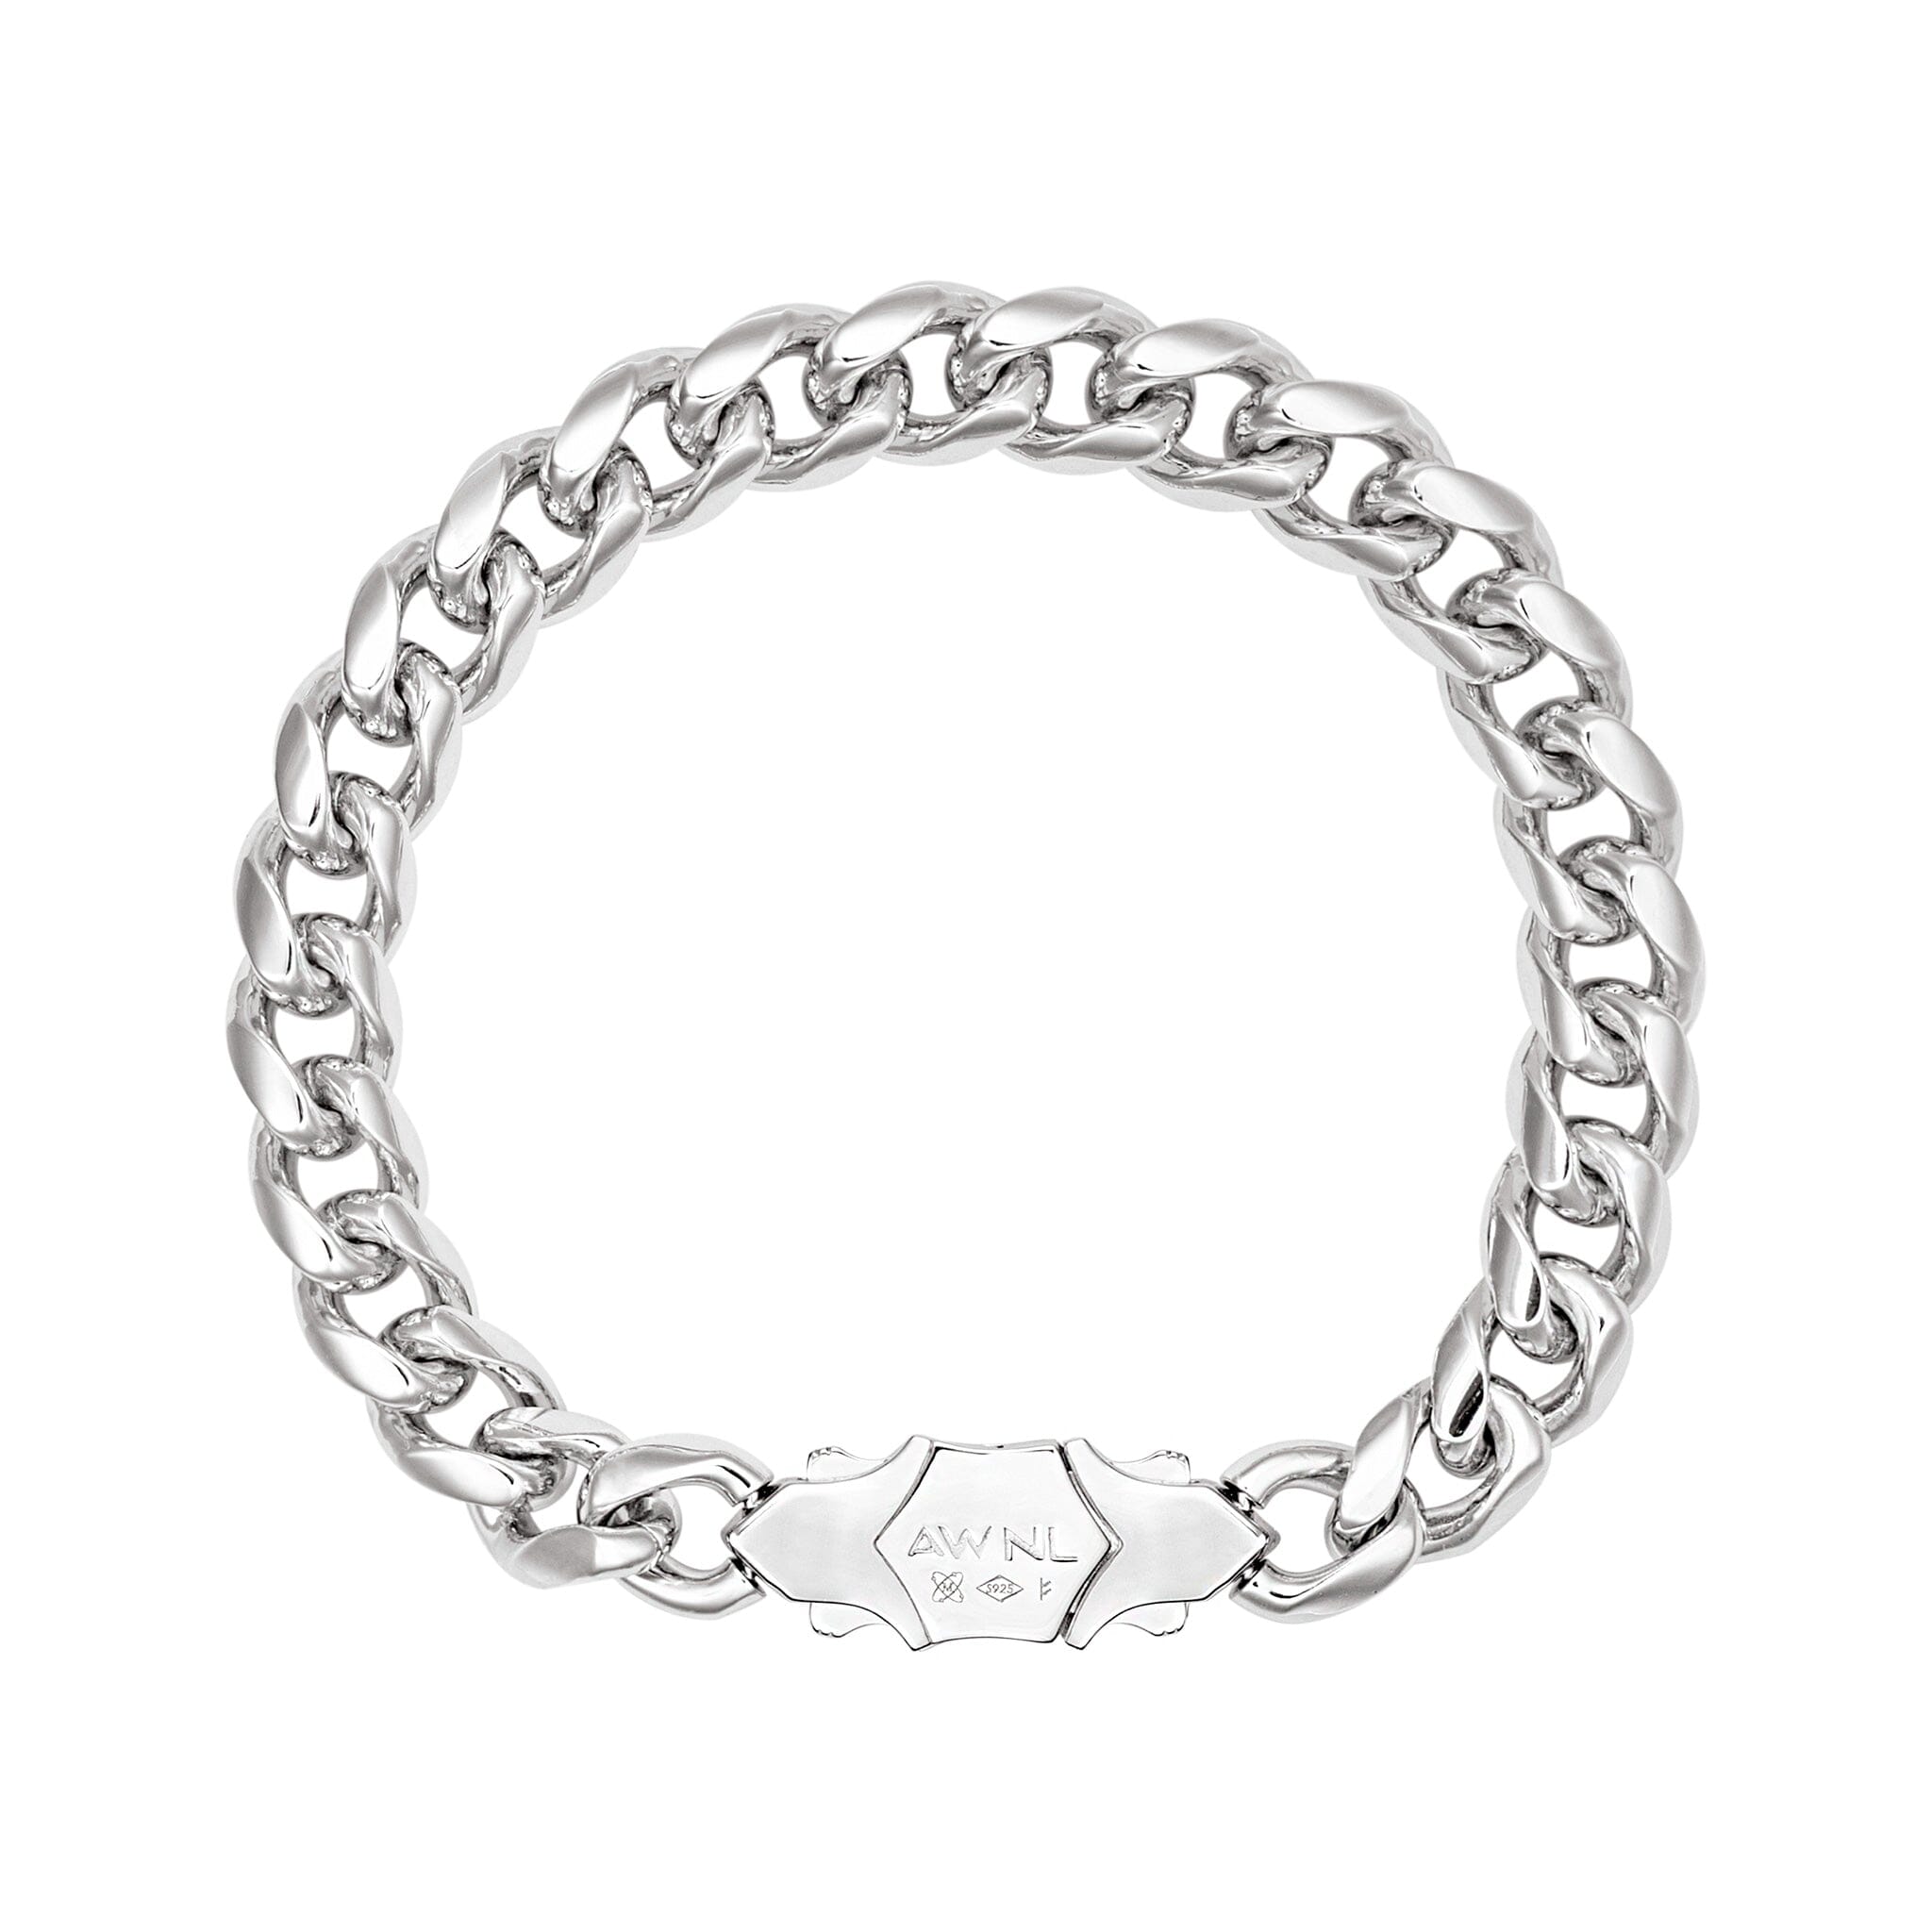 Men's Silver Chain Bracelet with Hexagonal Meteorite Bracelets WAA FASHION GROUP 